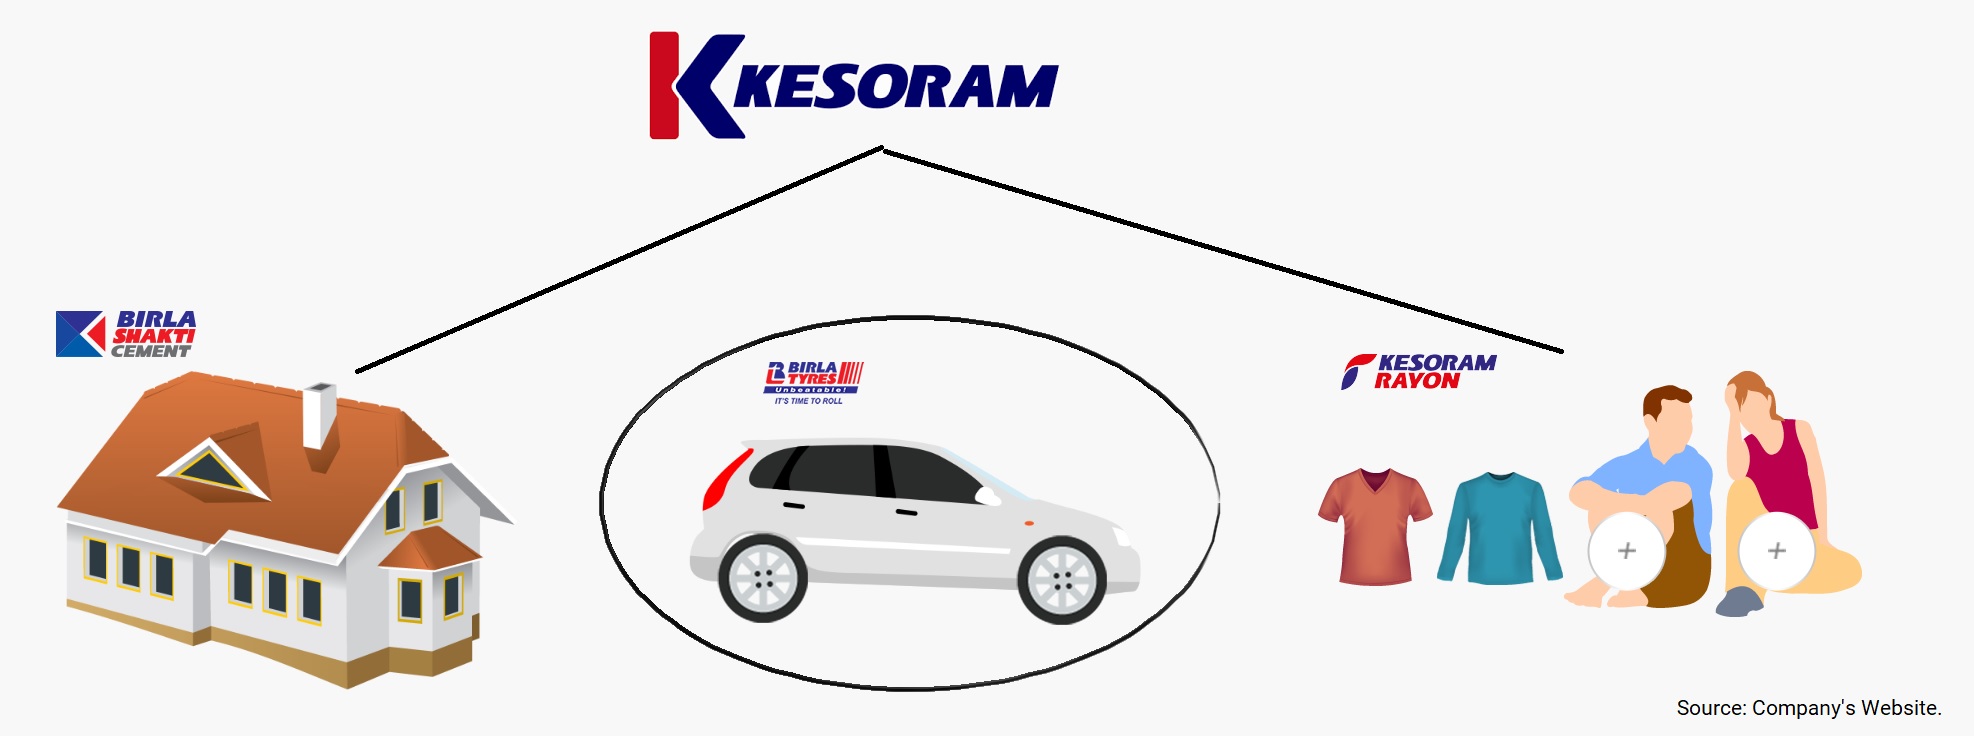 Kesoram-Demerger-Tyre-Business-Birla